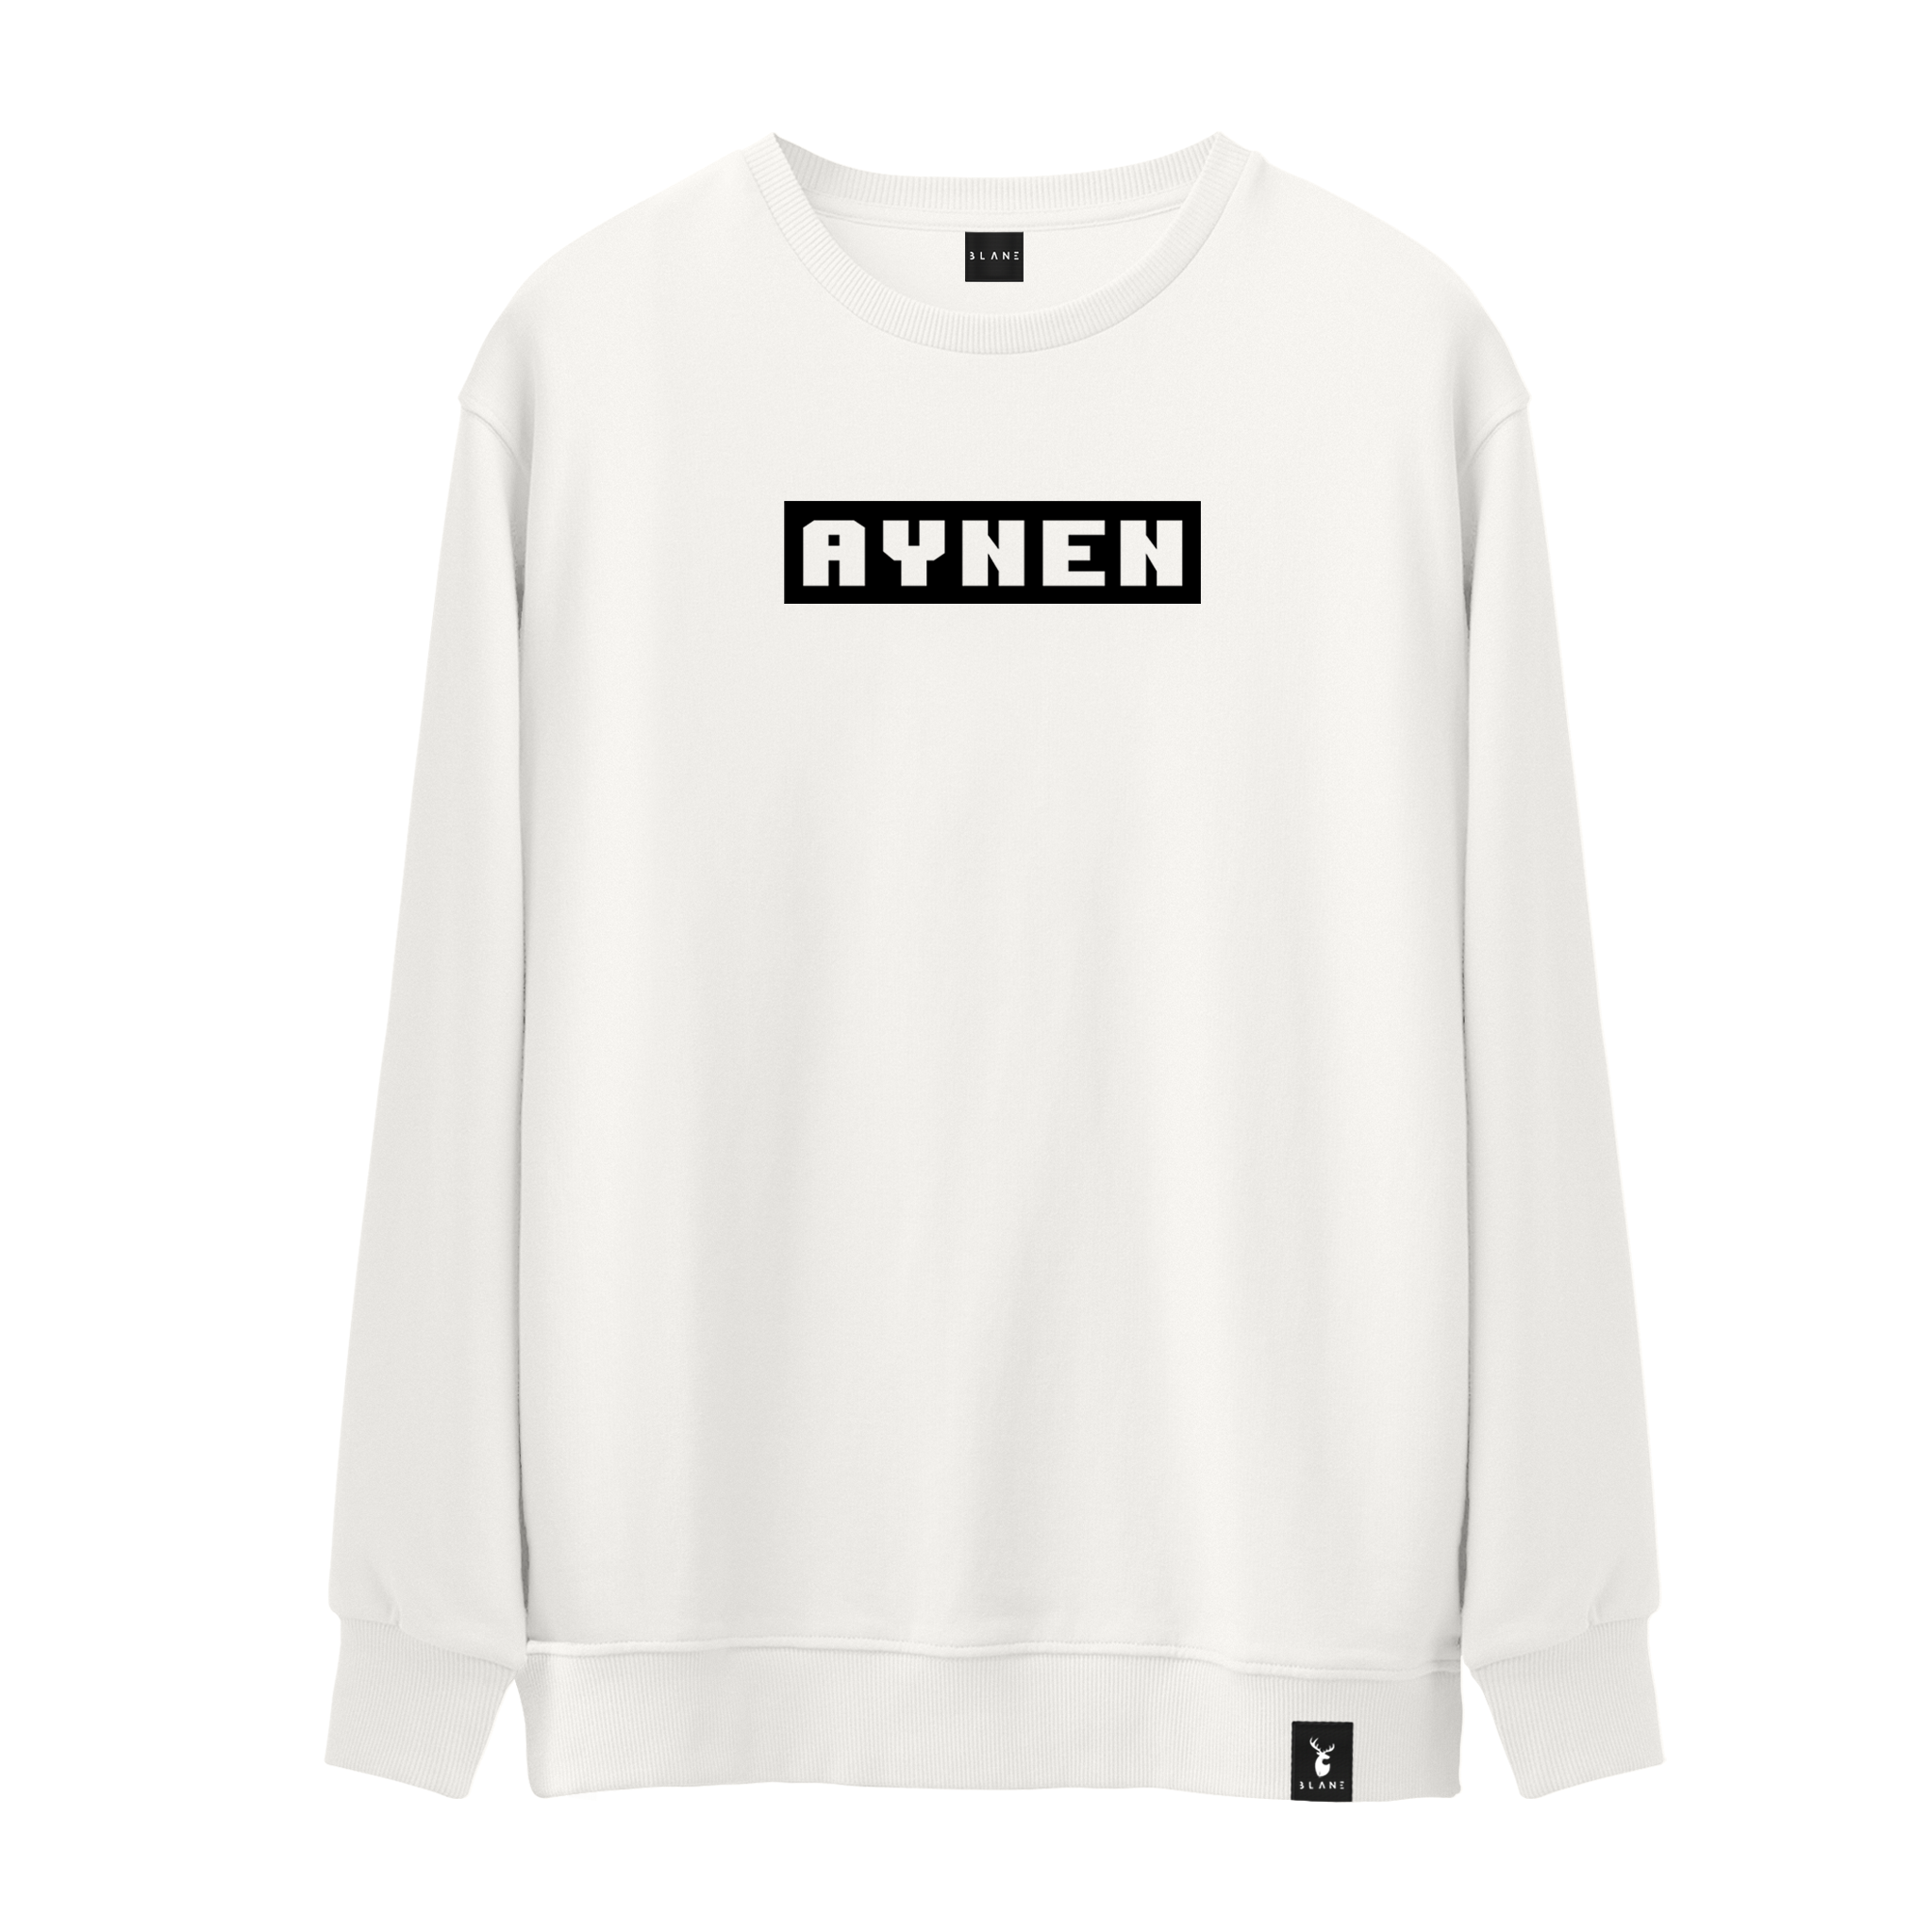 AYNEN - Sweatshirt